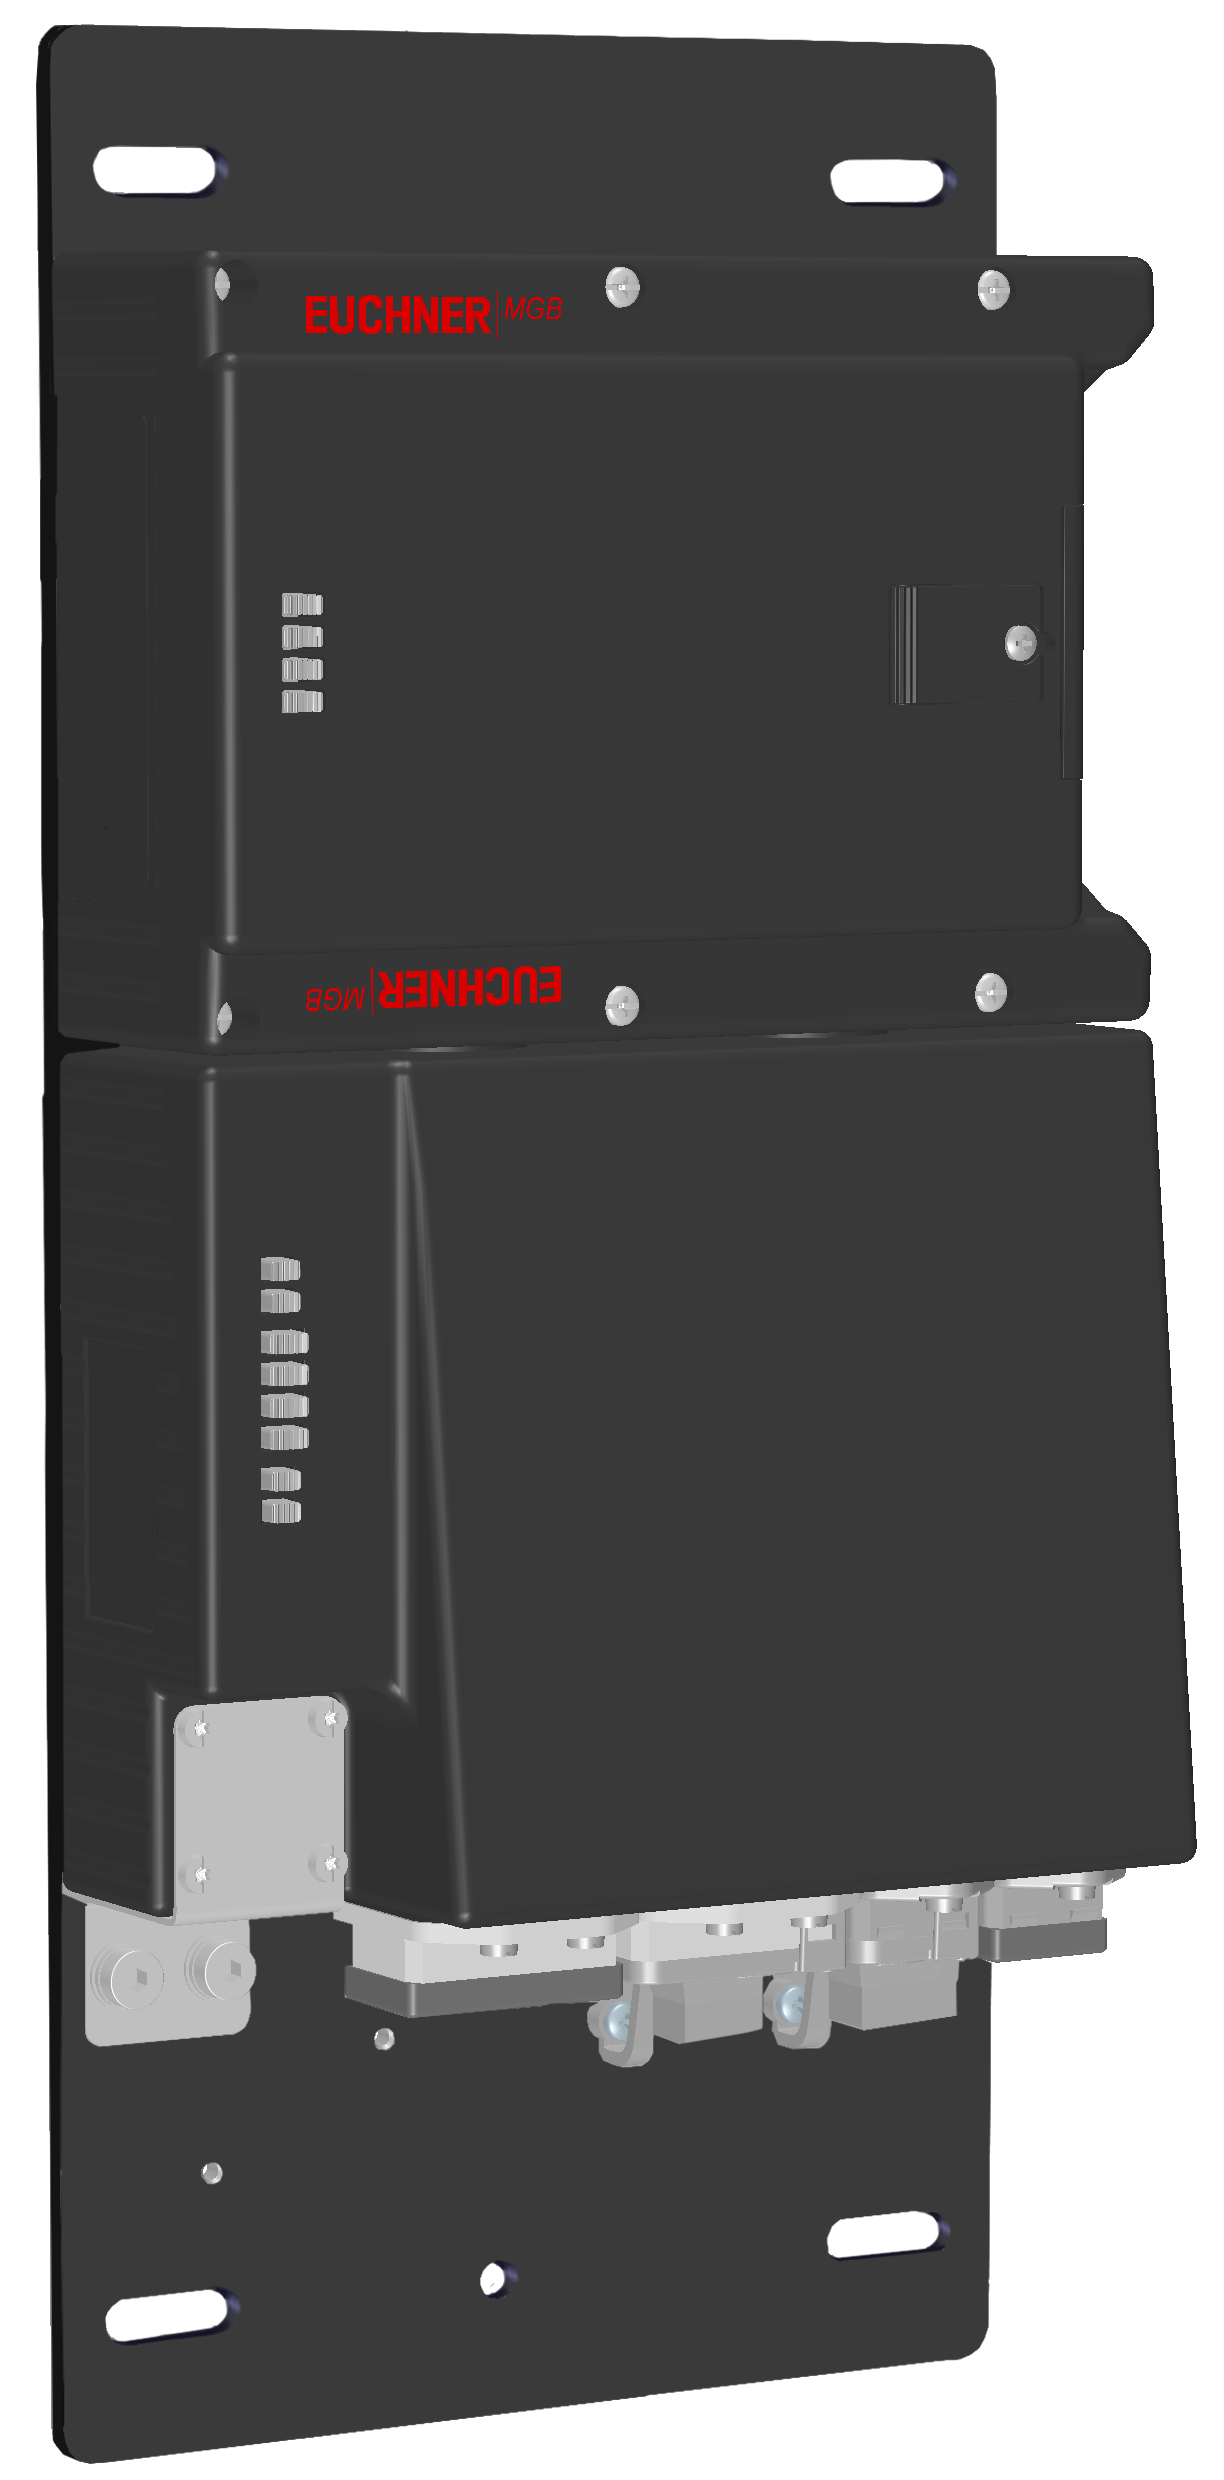 Vyhodnocovací moduly s jištěním ochranného krytu MGB-L2B-PNA-R-114044  (Obj. č. 114044)